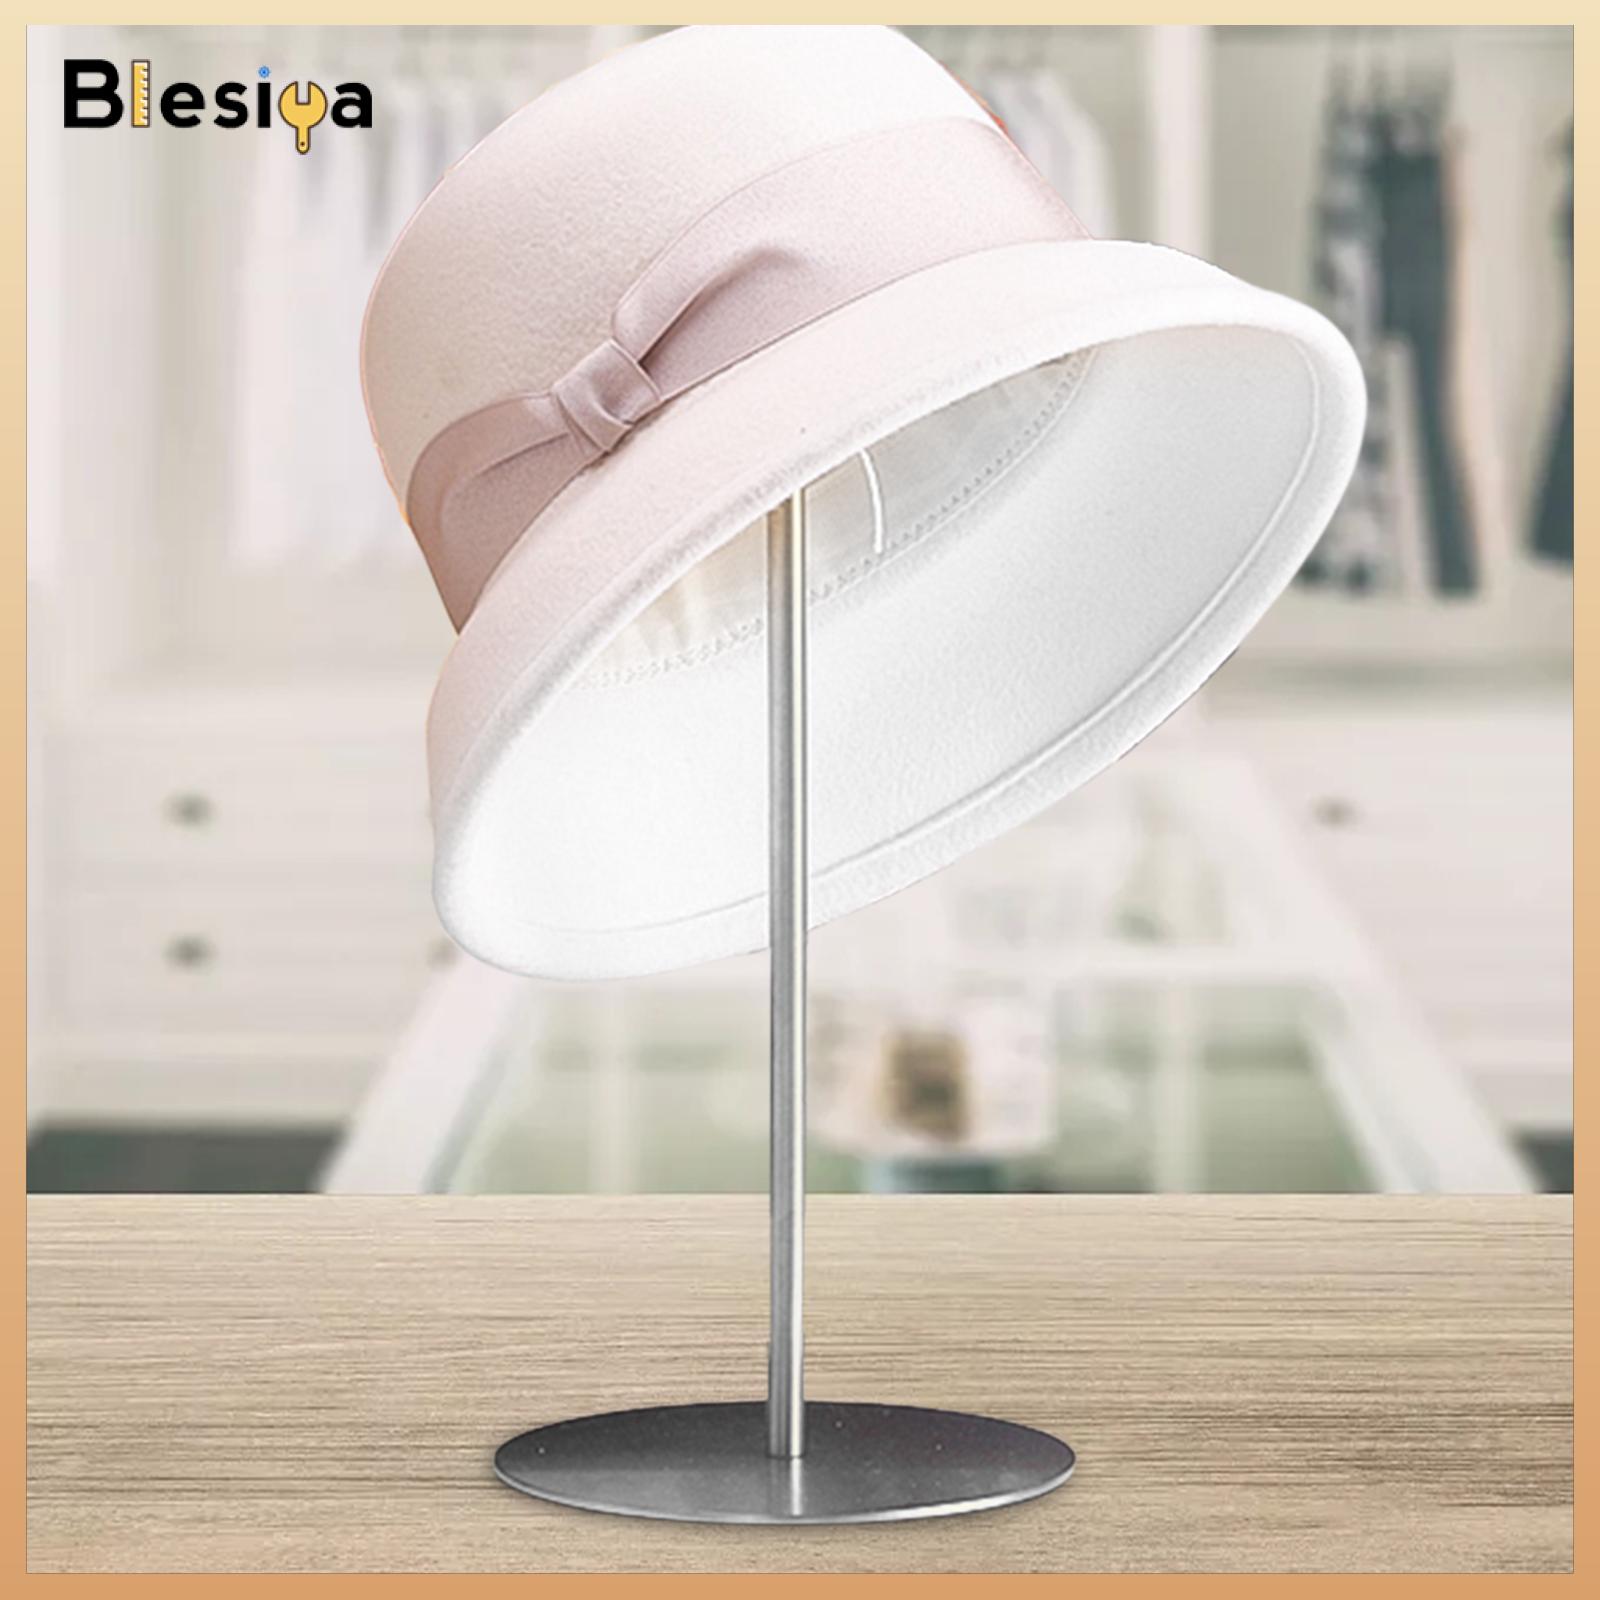 Blesiya Hat Stand Decorative Dome Shape Adjustable Wig Holder for Shop